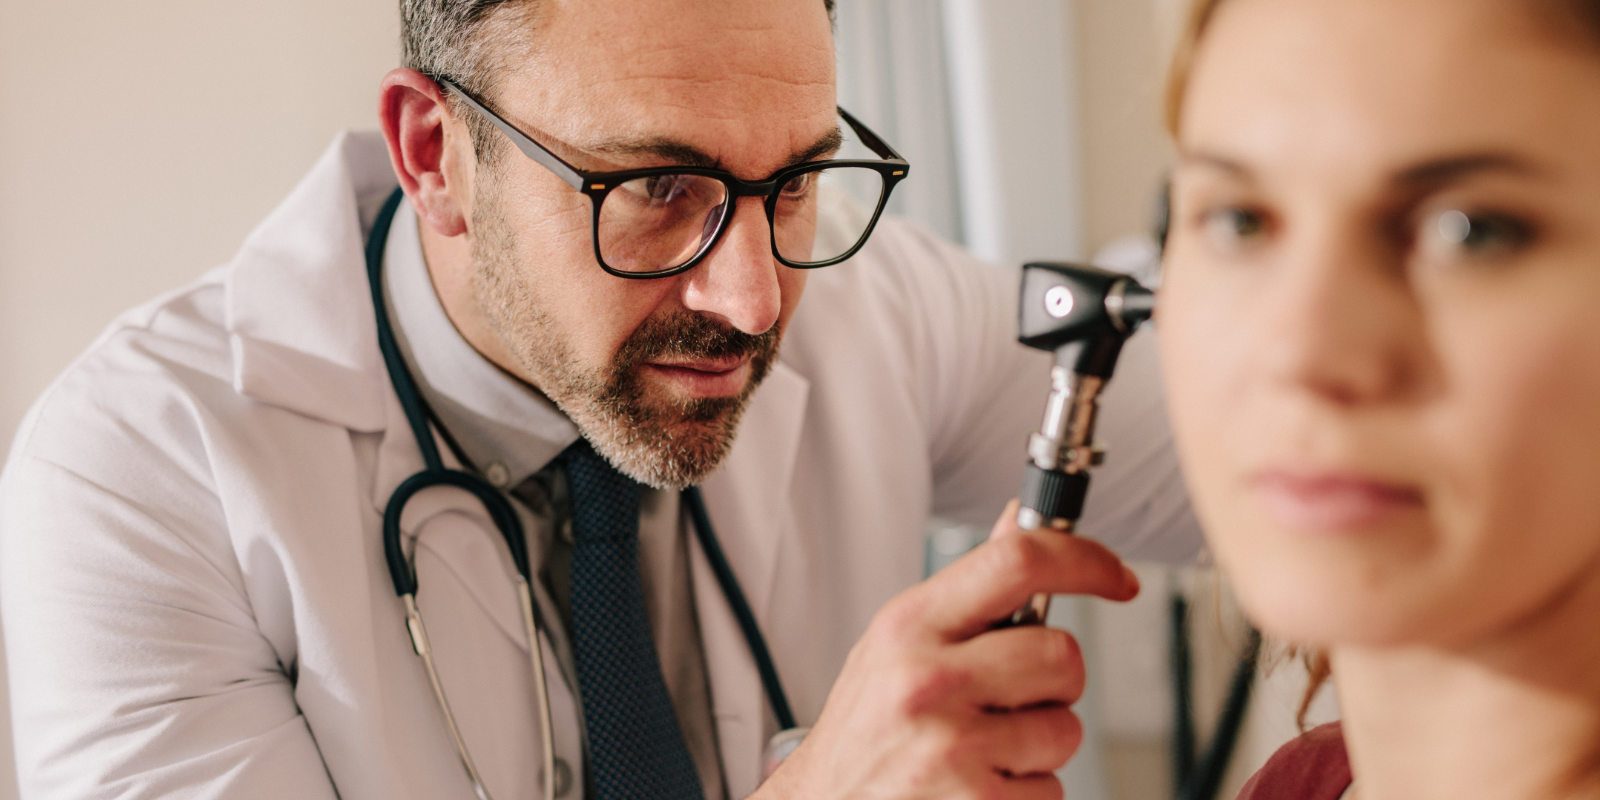 HNO-Arzt untersucht das Ohr einer Patientin